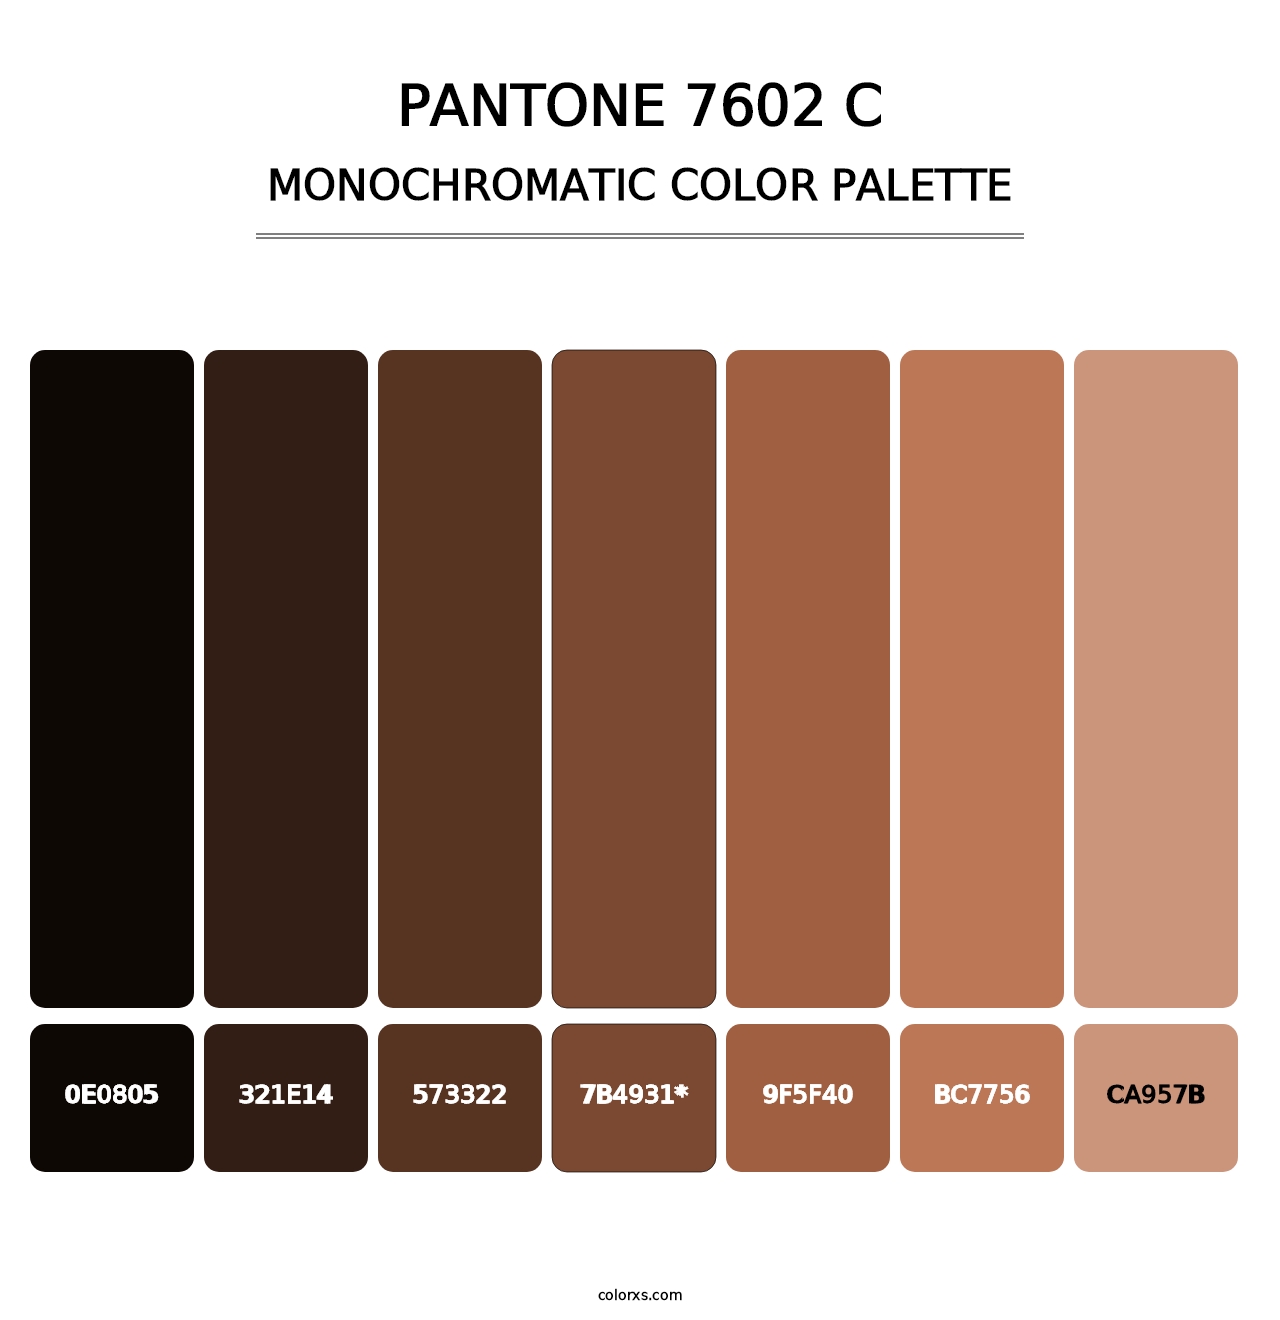 PANTONE 7602 C - Monochromatic Color Palette